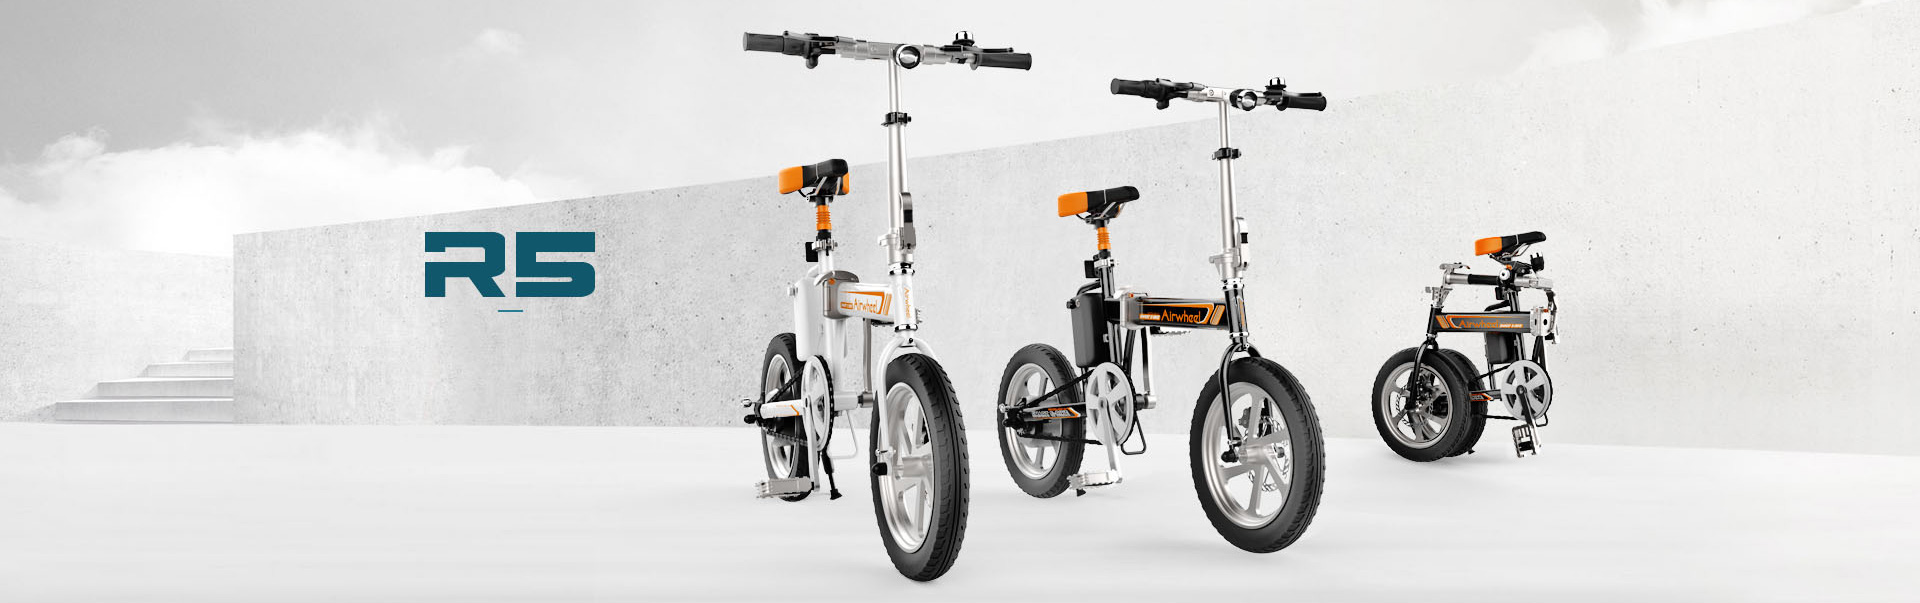 Xe đạp điện gấp Airwheel R5 